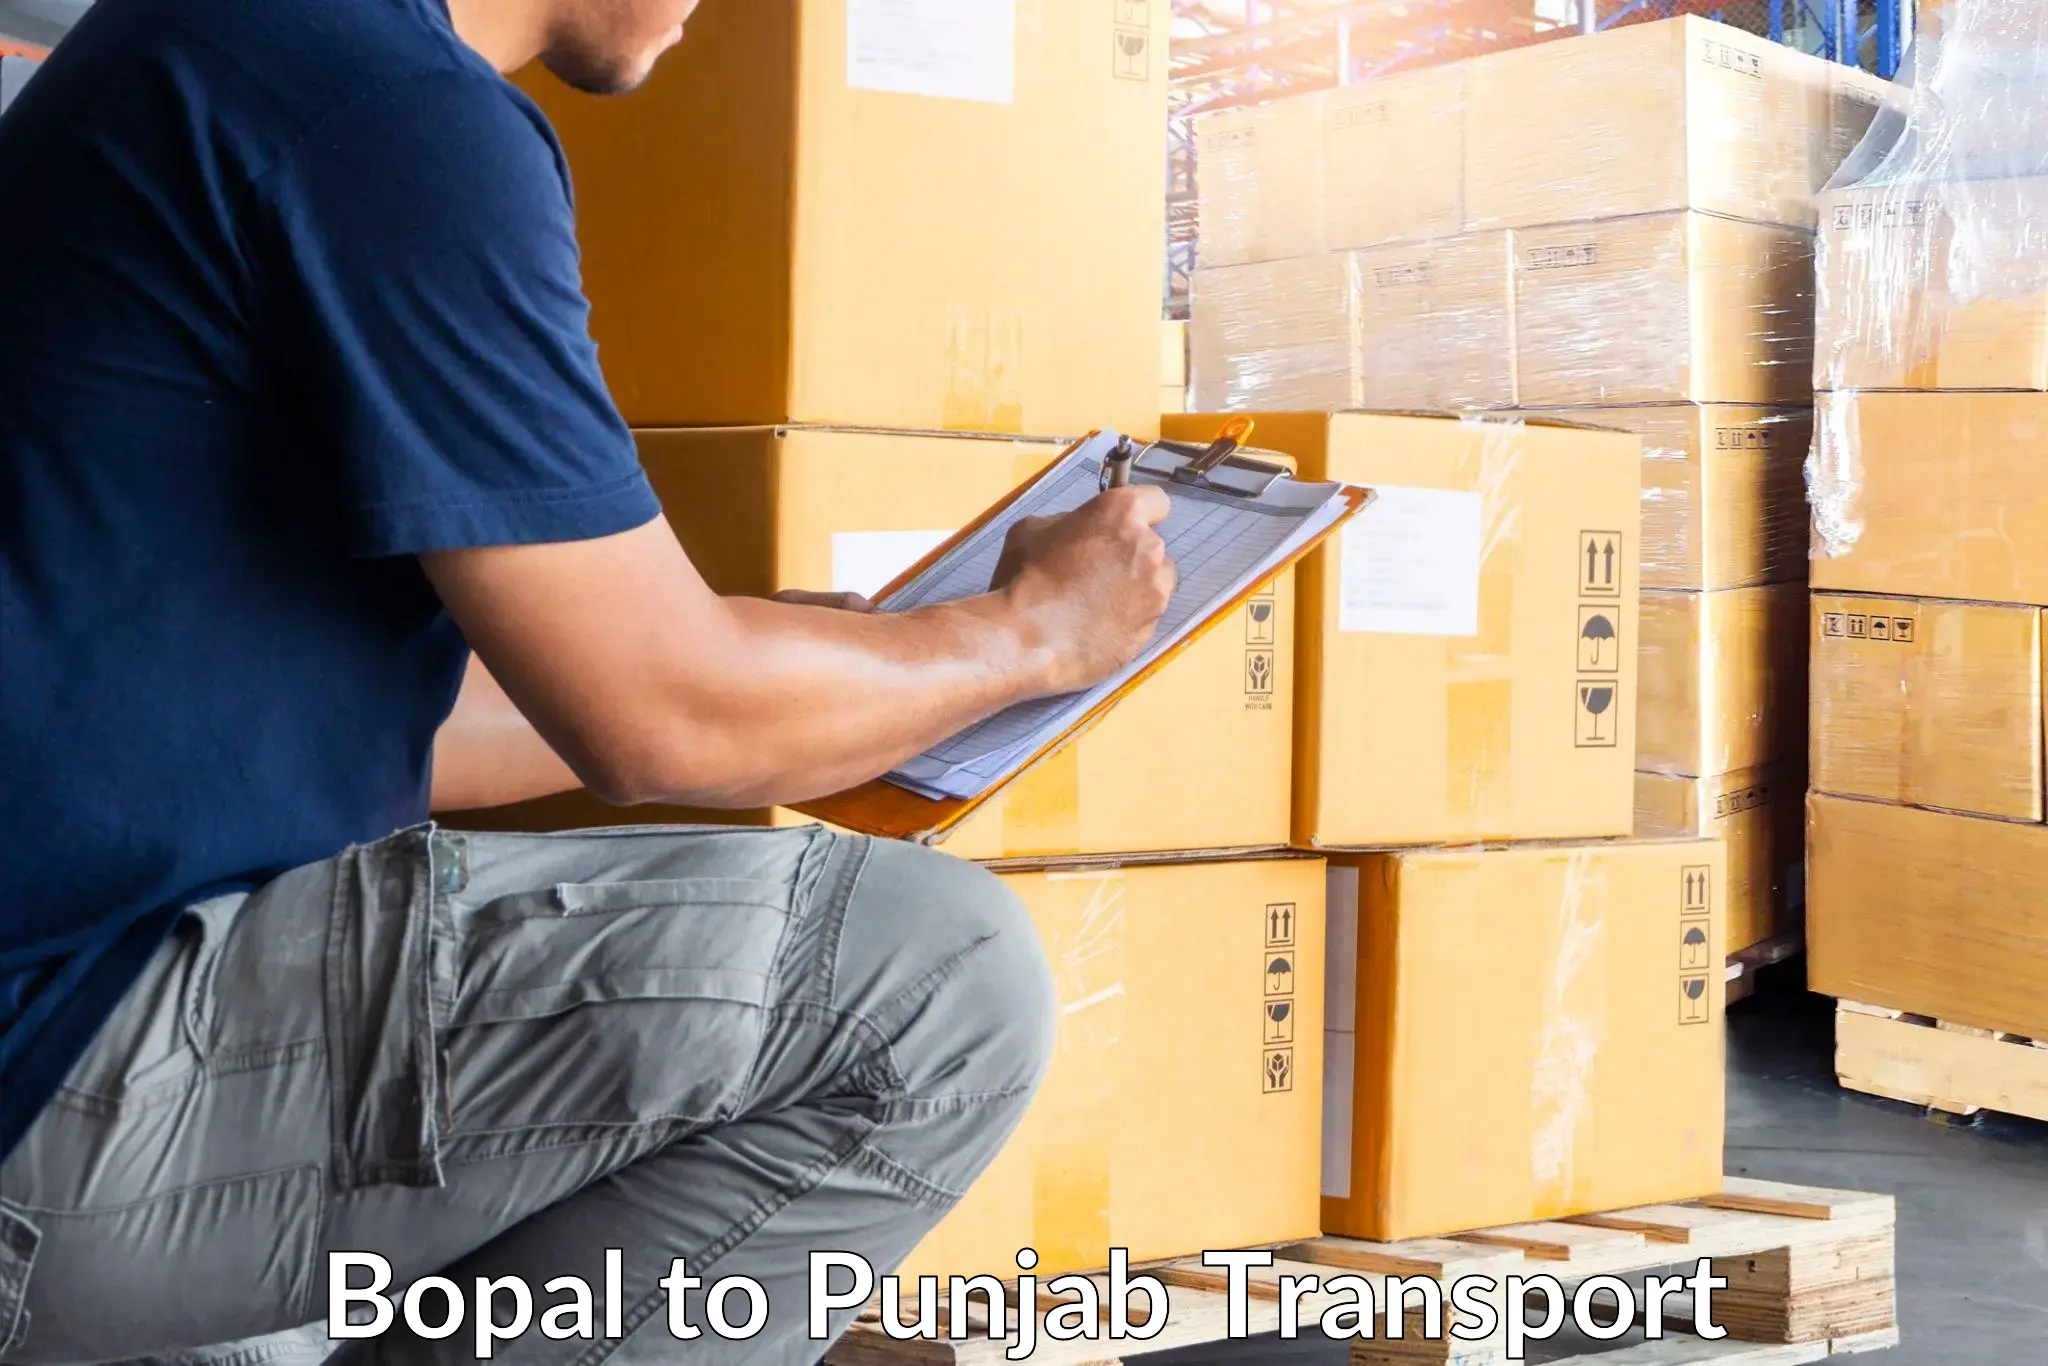 Shipping partner Bopal to Punjab